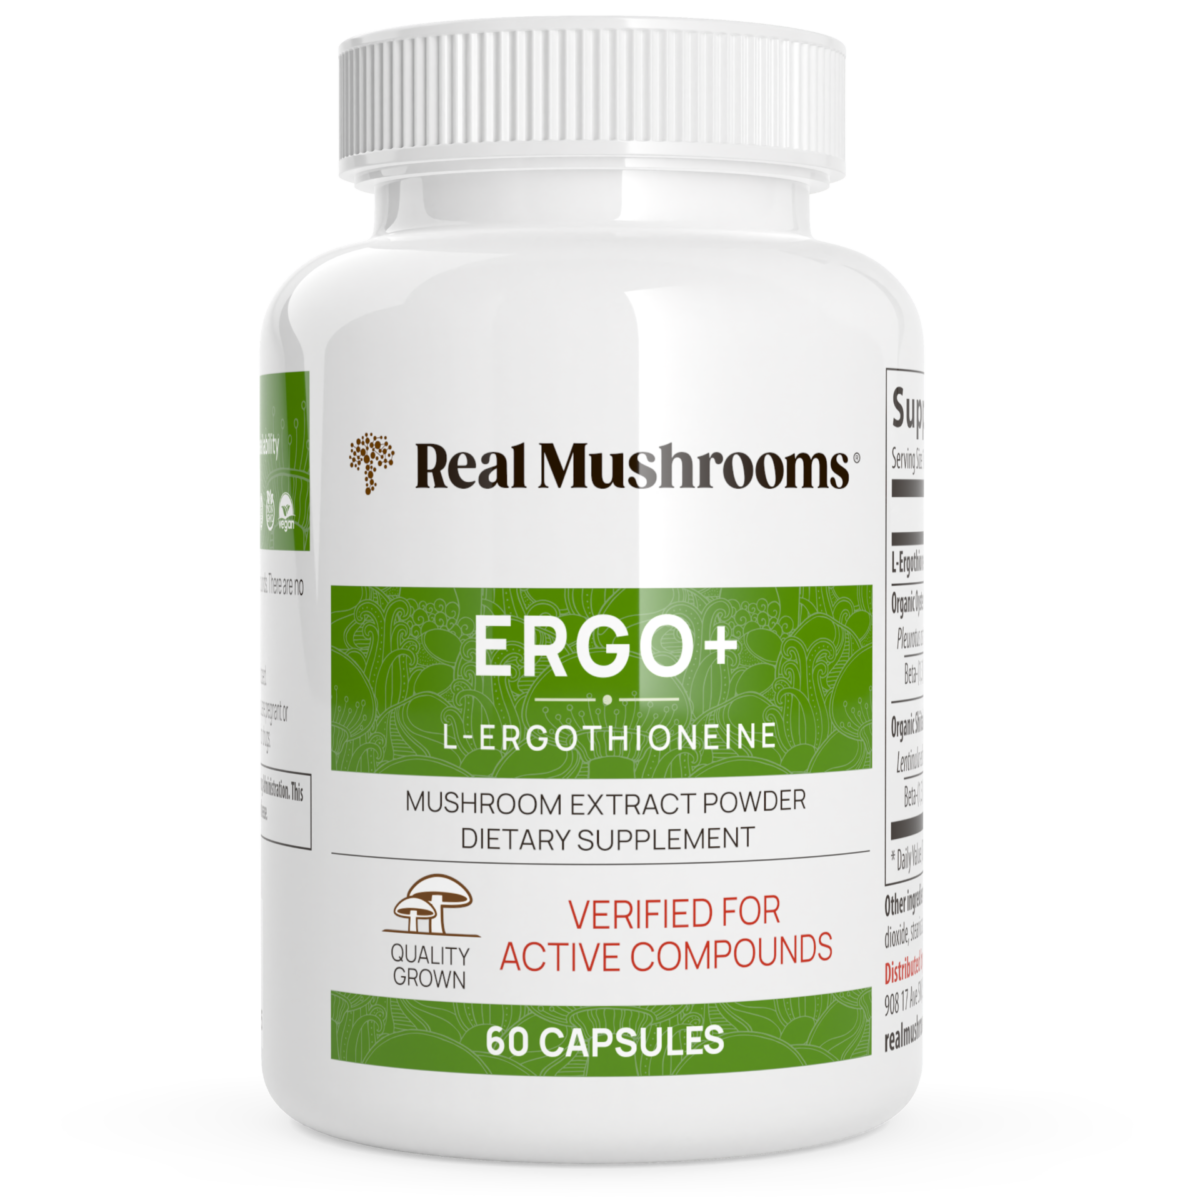 Real Mushrooms ERGO+ L-ERGOTHIONEINE